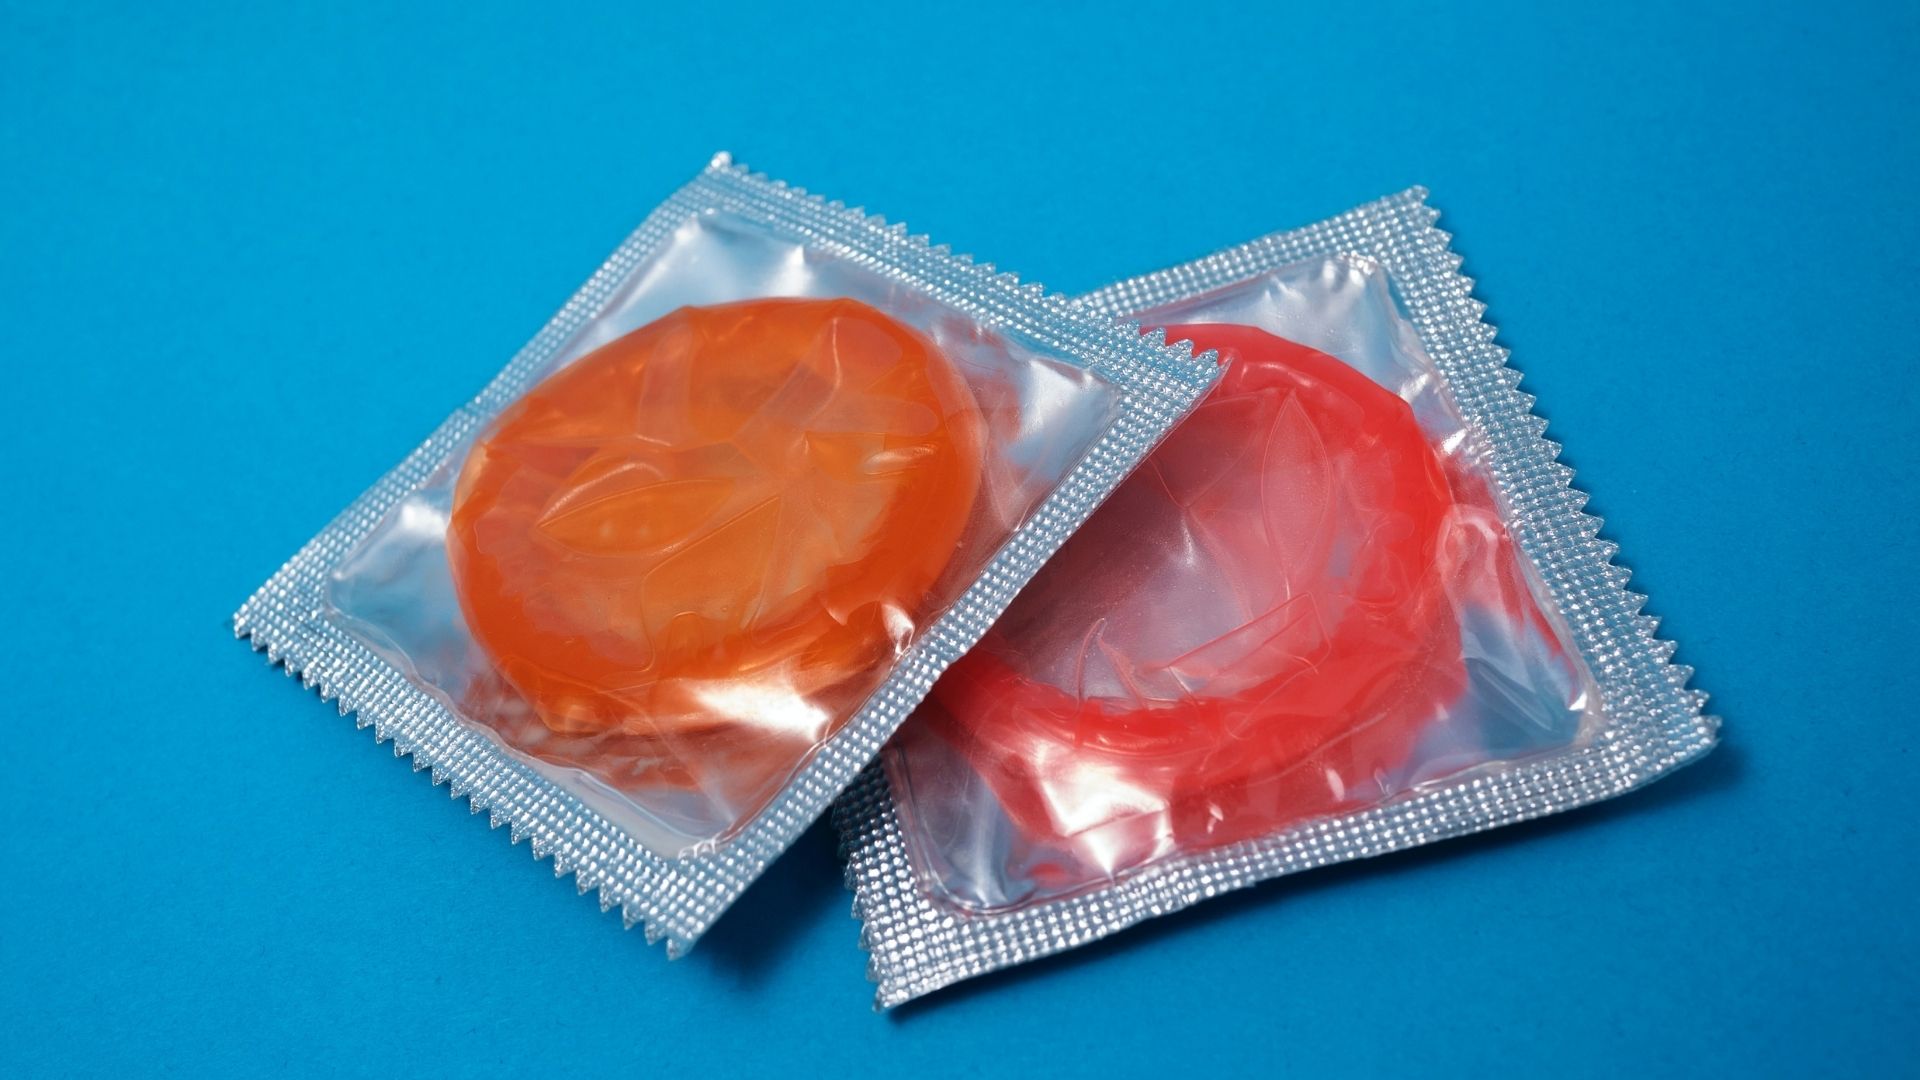 Des préservatifs gratuits pour les 18-25 ans : une bonne nouvelle ?